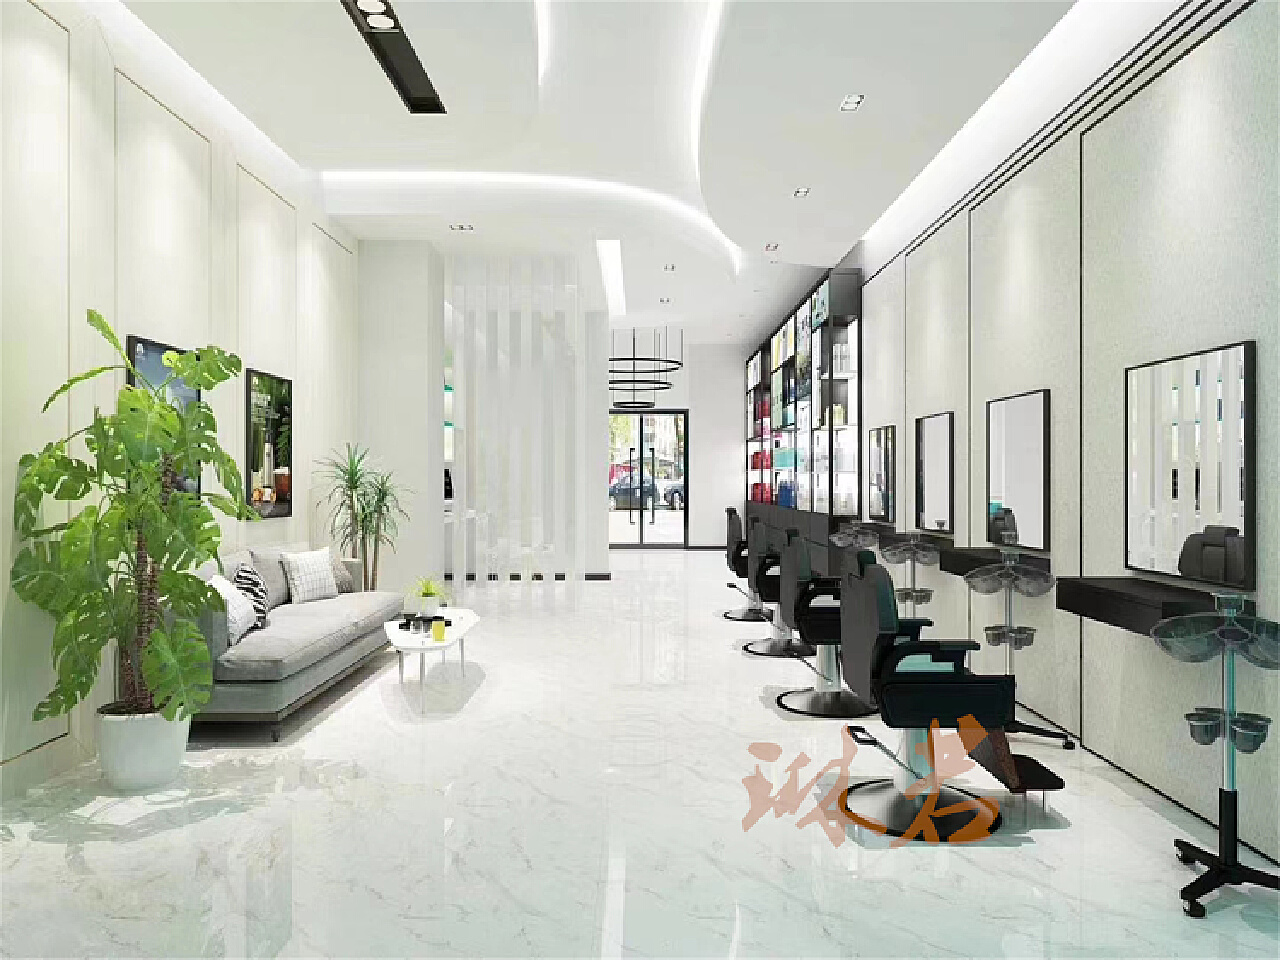 现代理发店大厅前台 - 效果图交流区-建E室内设计网